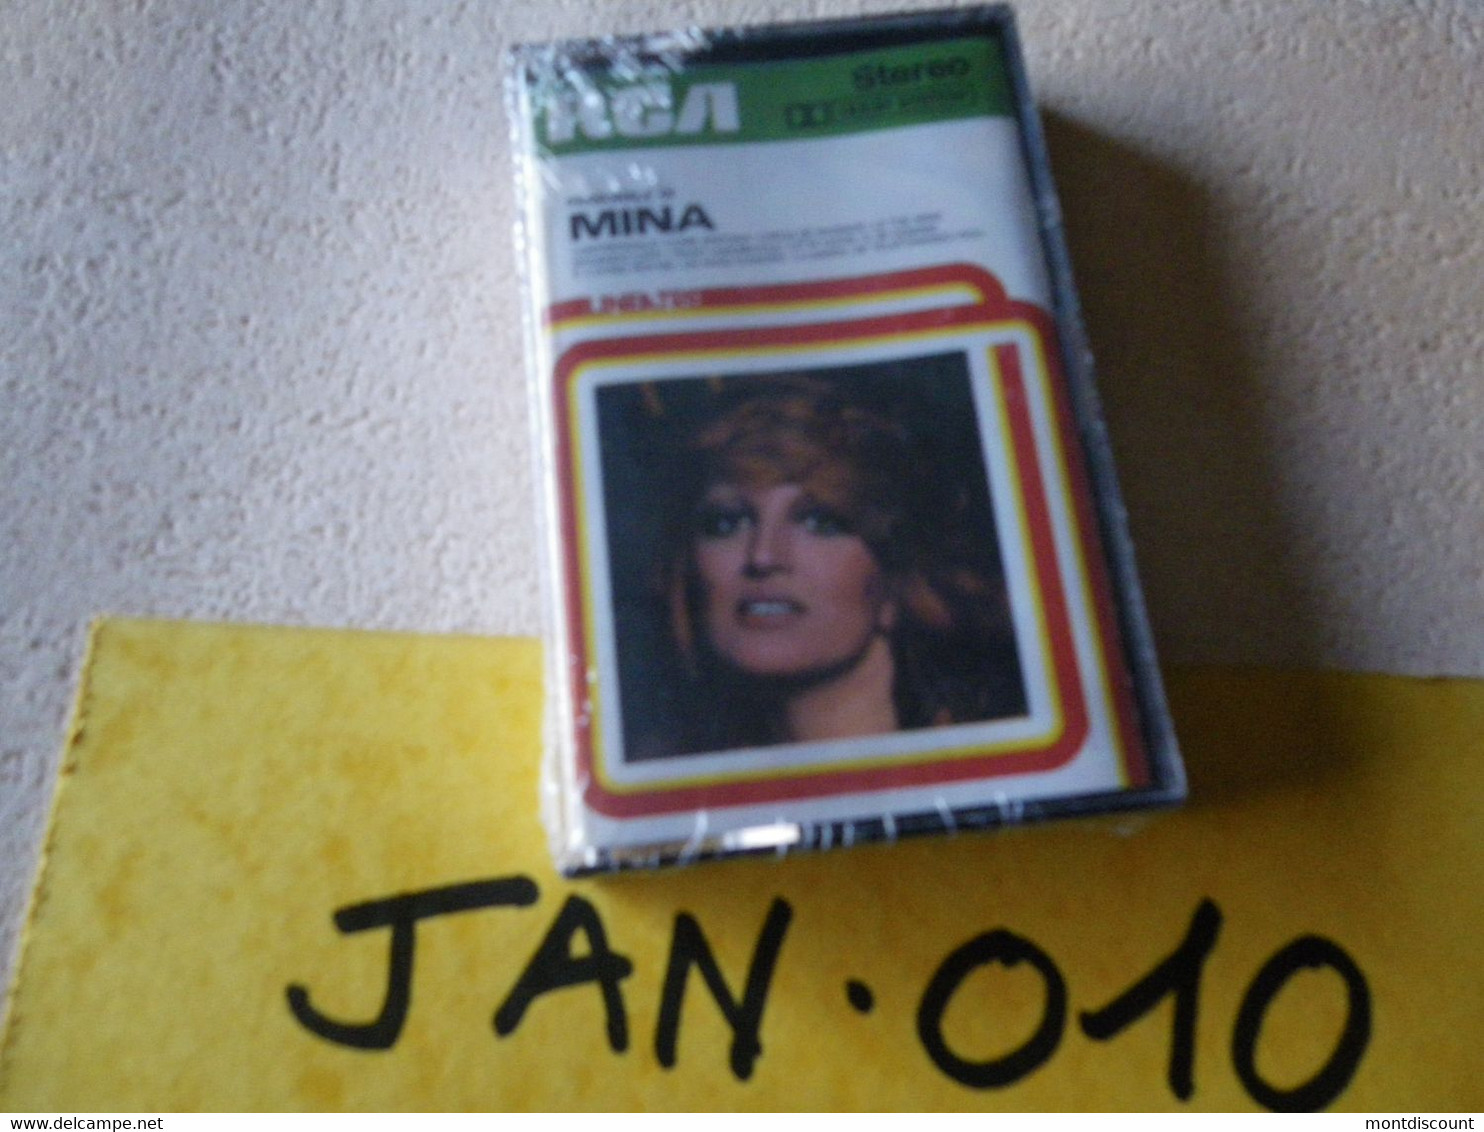 MINA K7 AUDIO EMBALLE D'ORIGINE JAMAIS SERVIE... VOIR PHOTO... (JAN 010) - Cassettes Audio